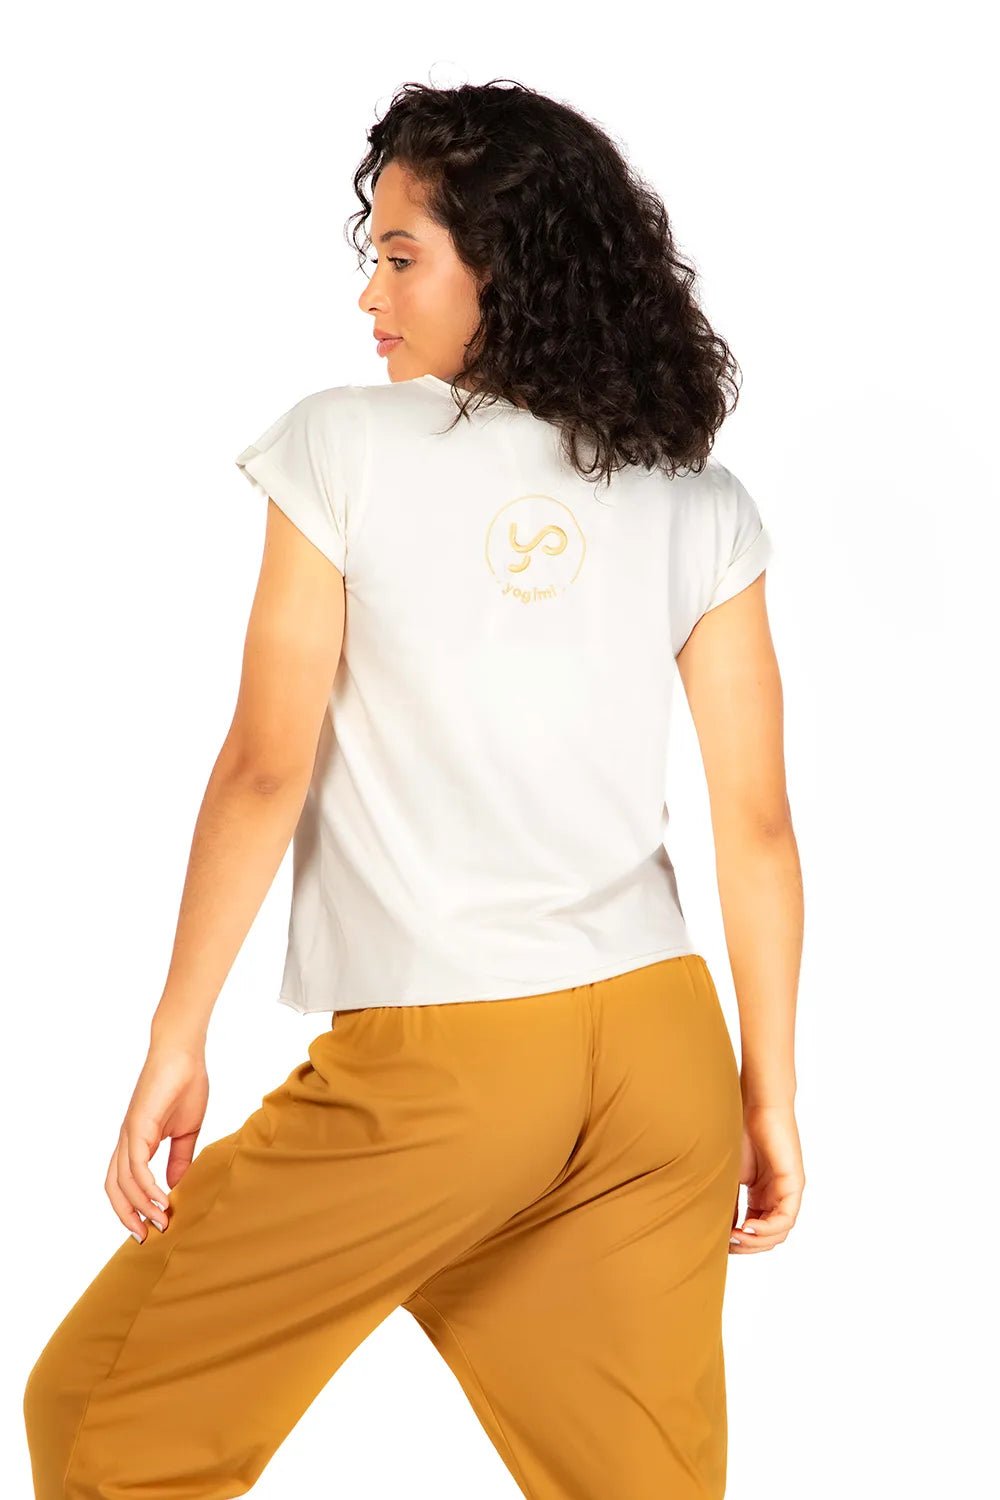 Camiseta Tshirt Yoga Changed de manga corta en color blanco de Yogimi. Un básico deal para combinar con cualquier prenda.